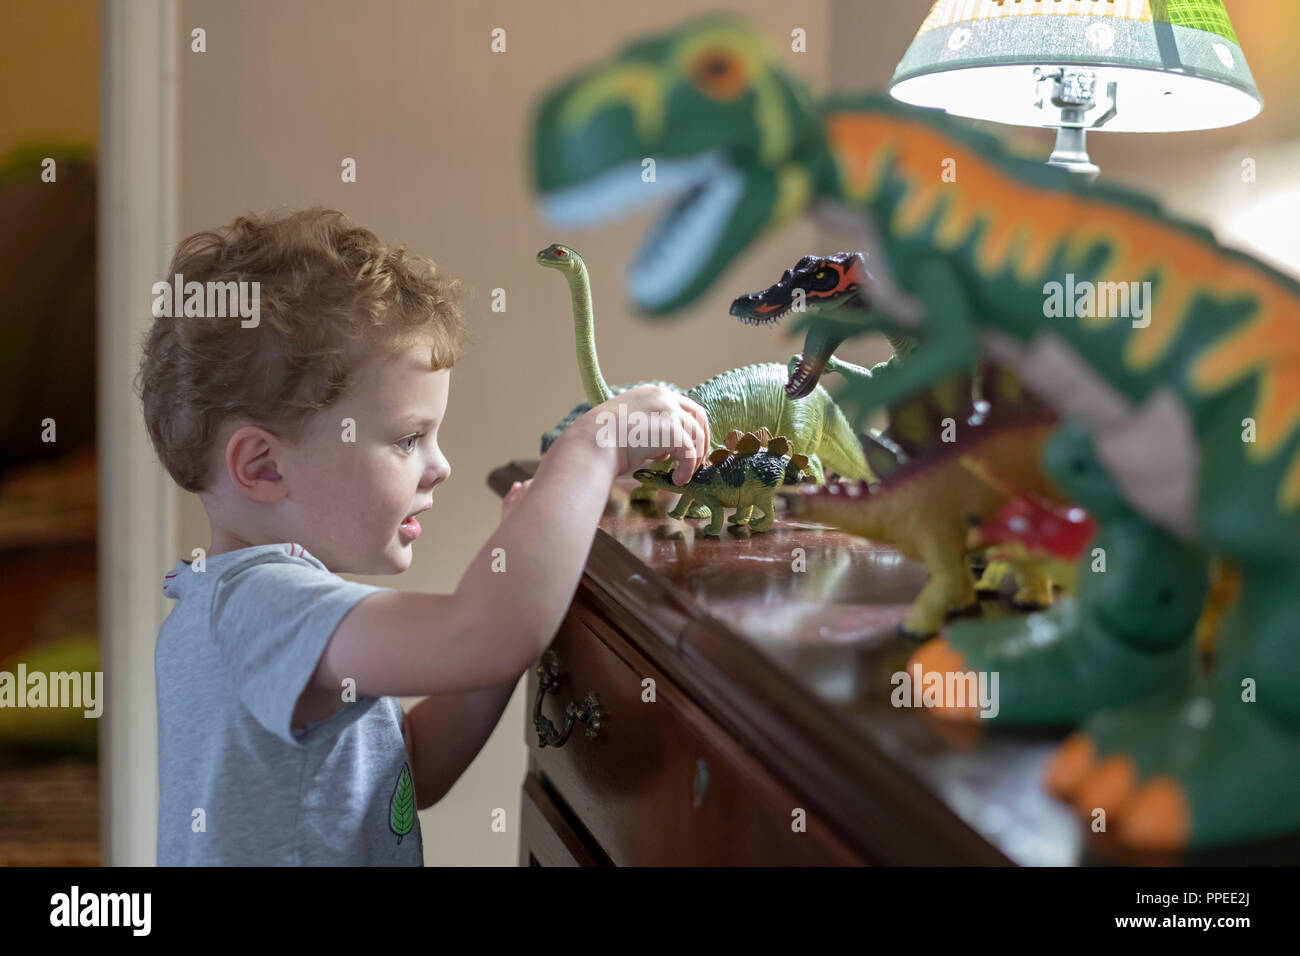 Wheat Ridge, Colorado - Adam Hjermstad, 4, spielt mit seinem Spielzeug Dinosaurier. Stockfoto